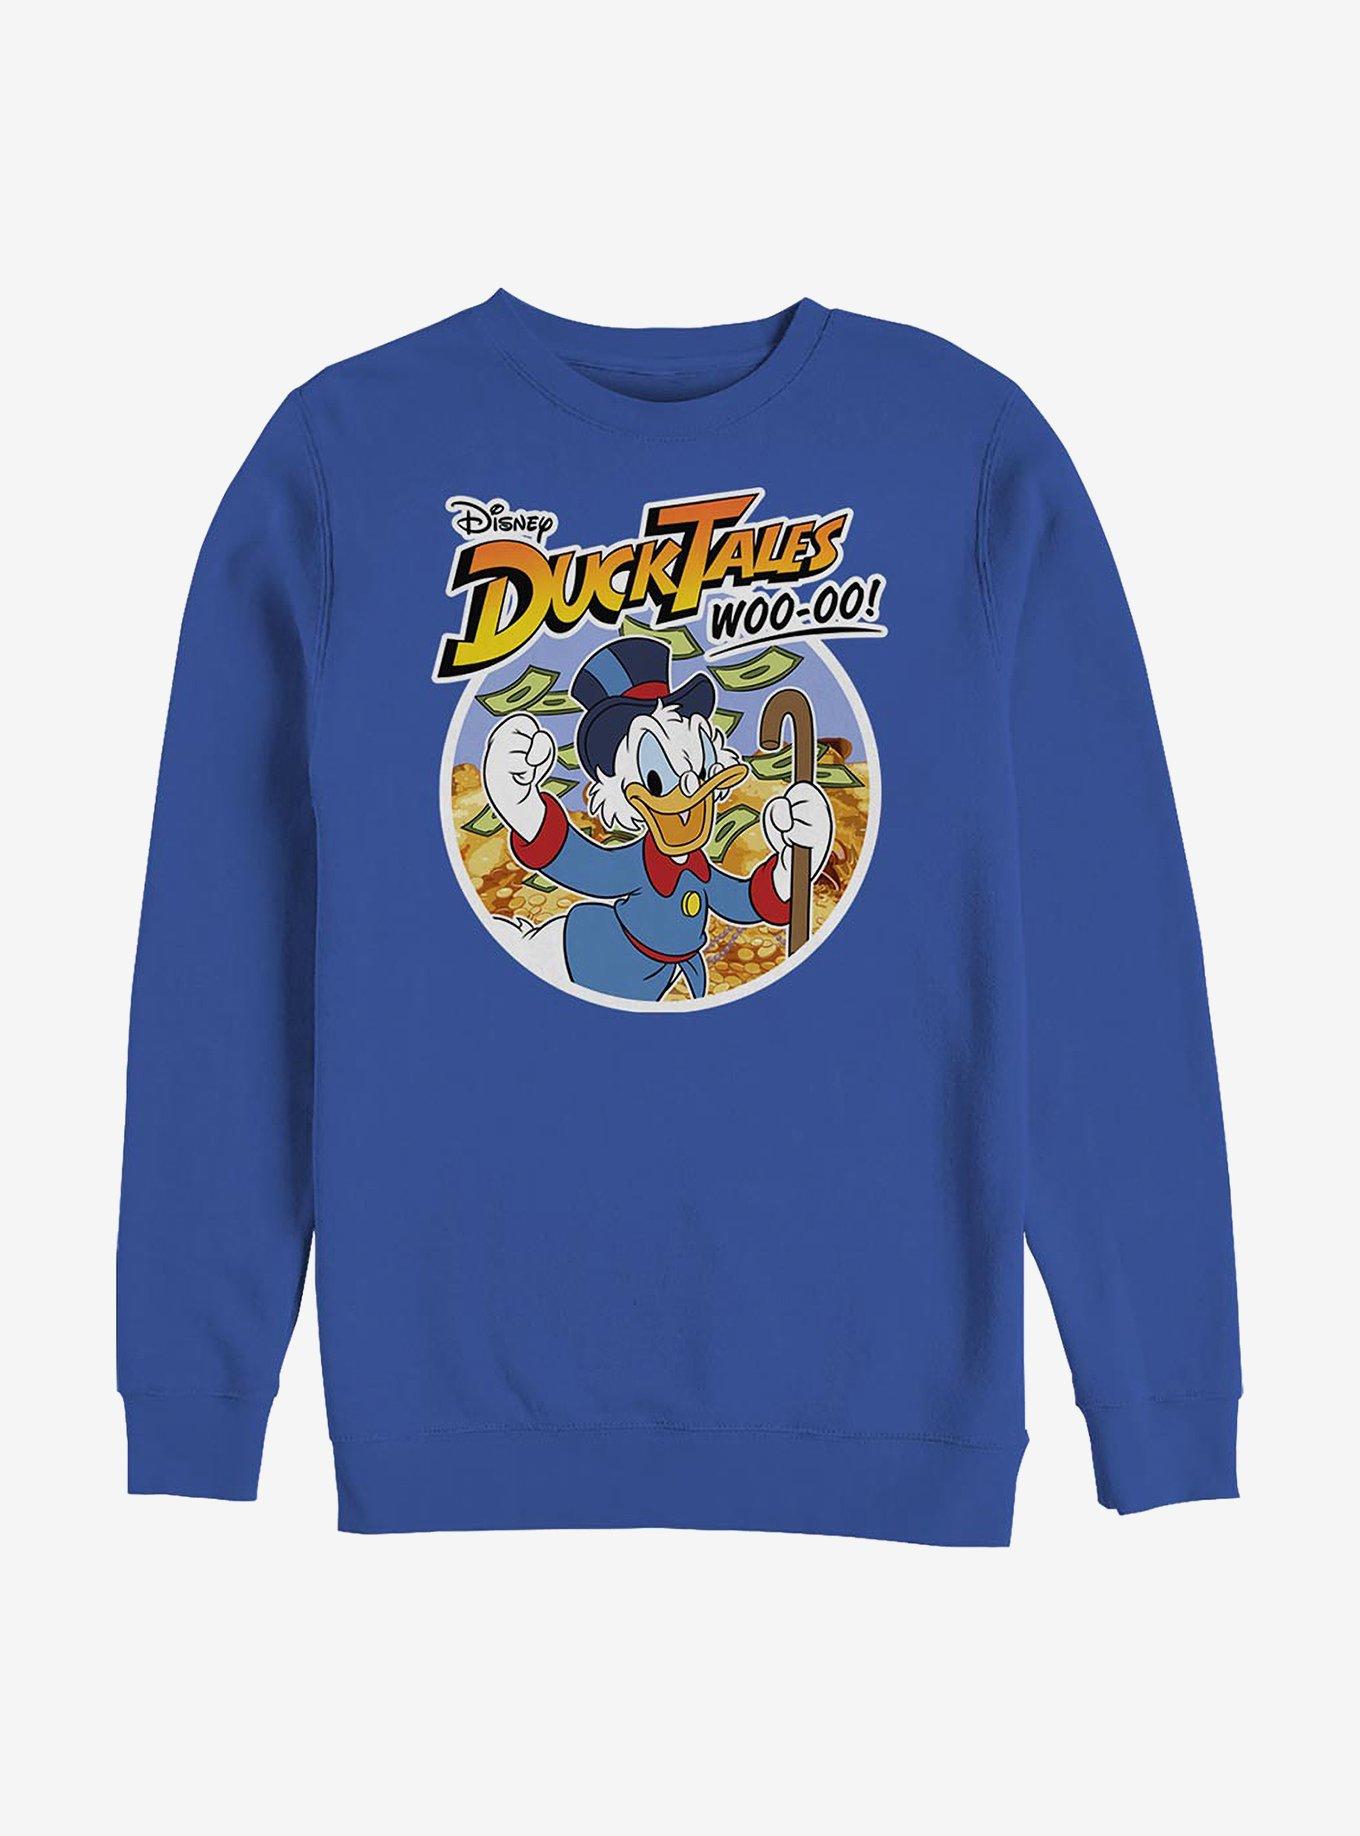 Disney Ducktales Scrooge Woo-oo Crew Sweatshirt